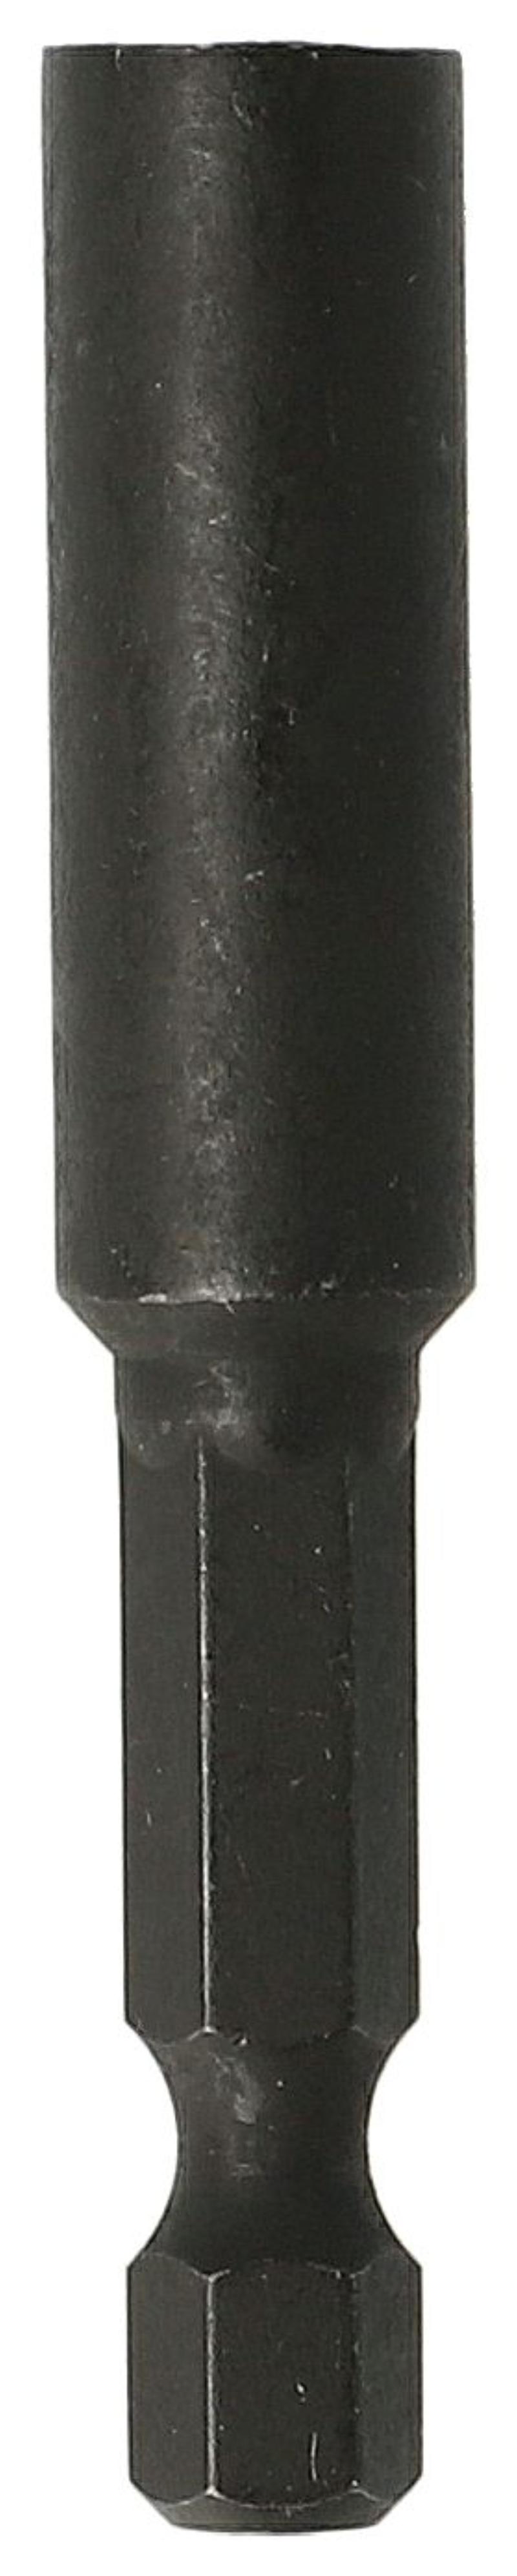 Heller bitsholder 60mm, magnetisk